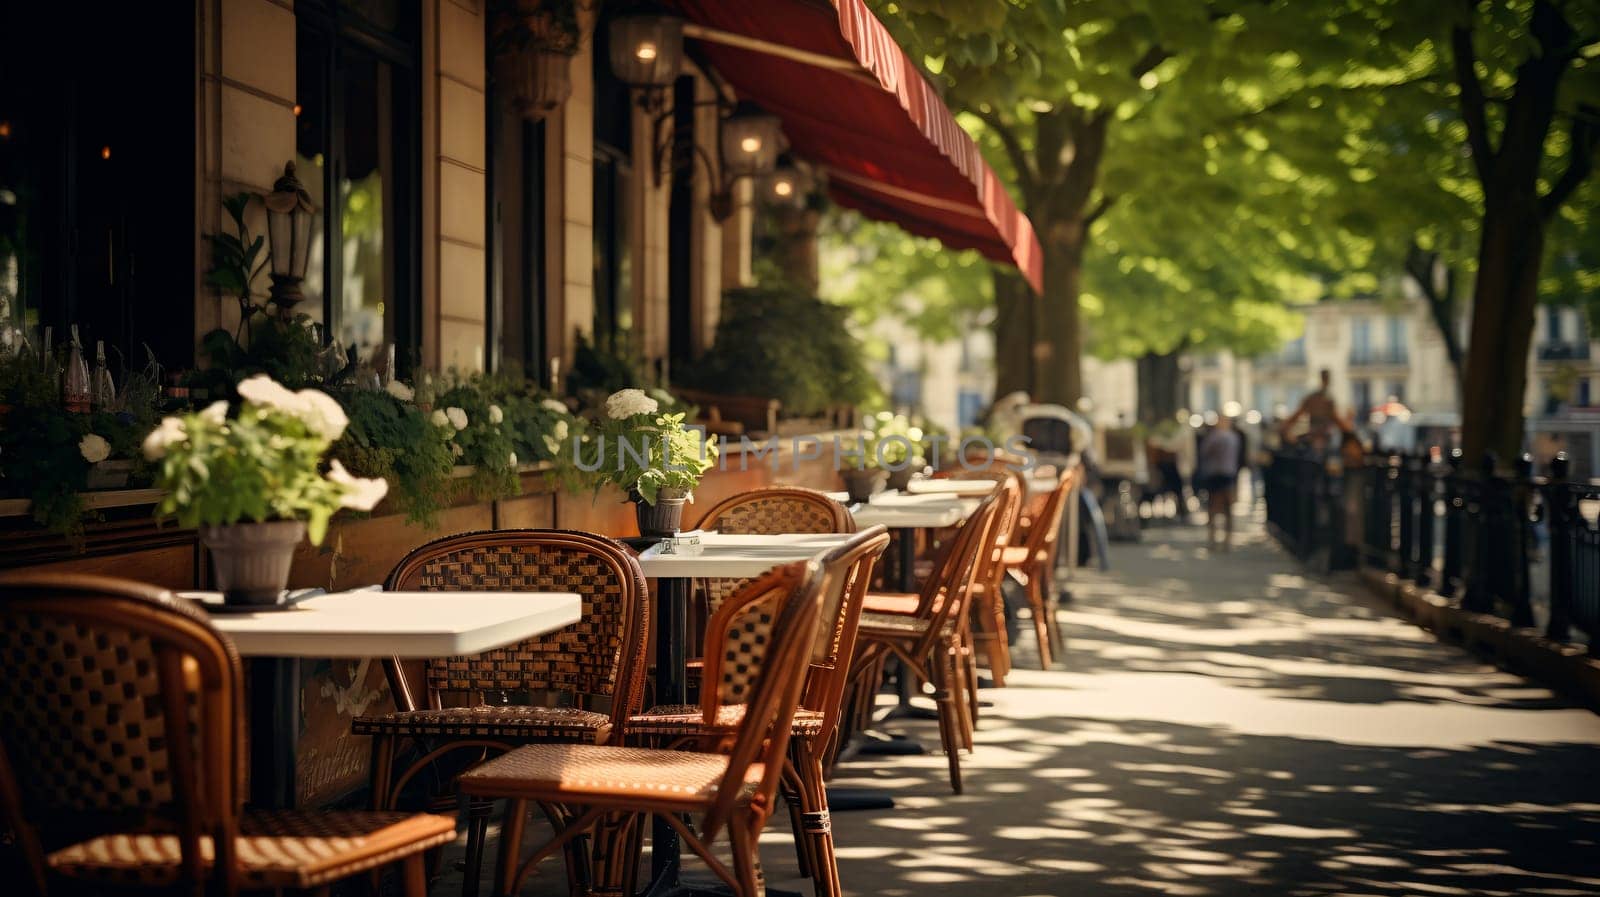 Sunlit Sidewalk Cafe in Early Morning by chrisroll